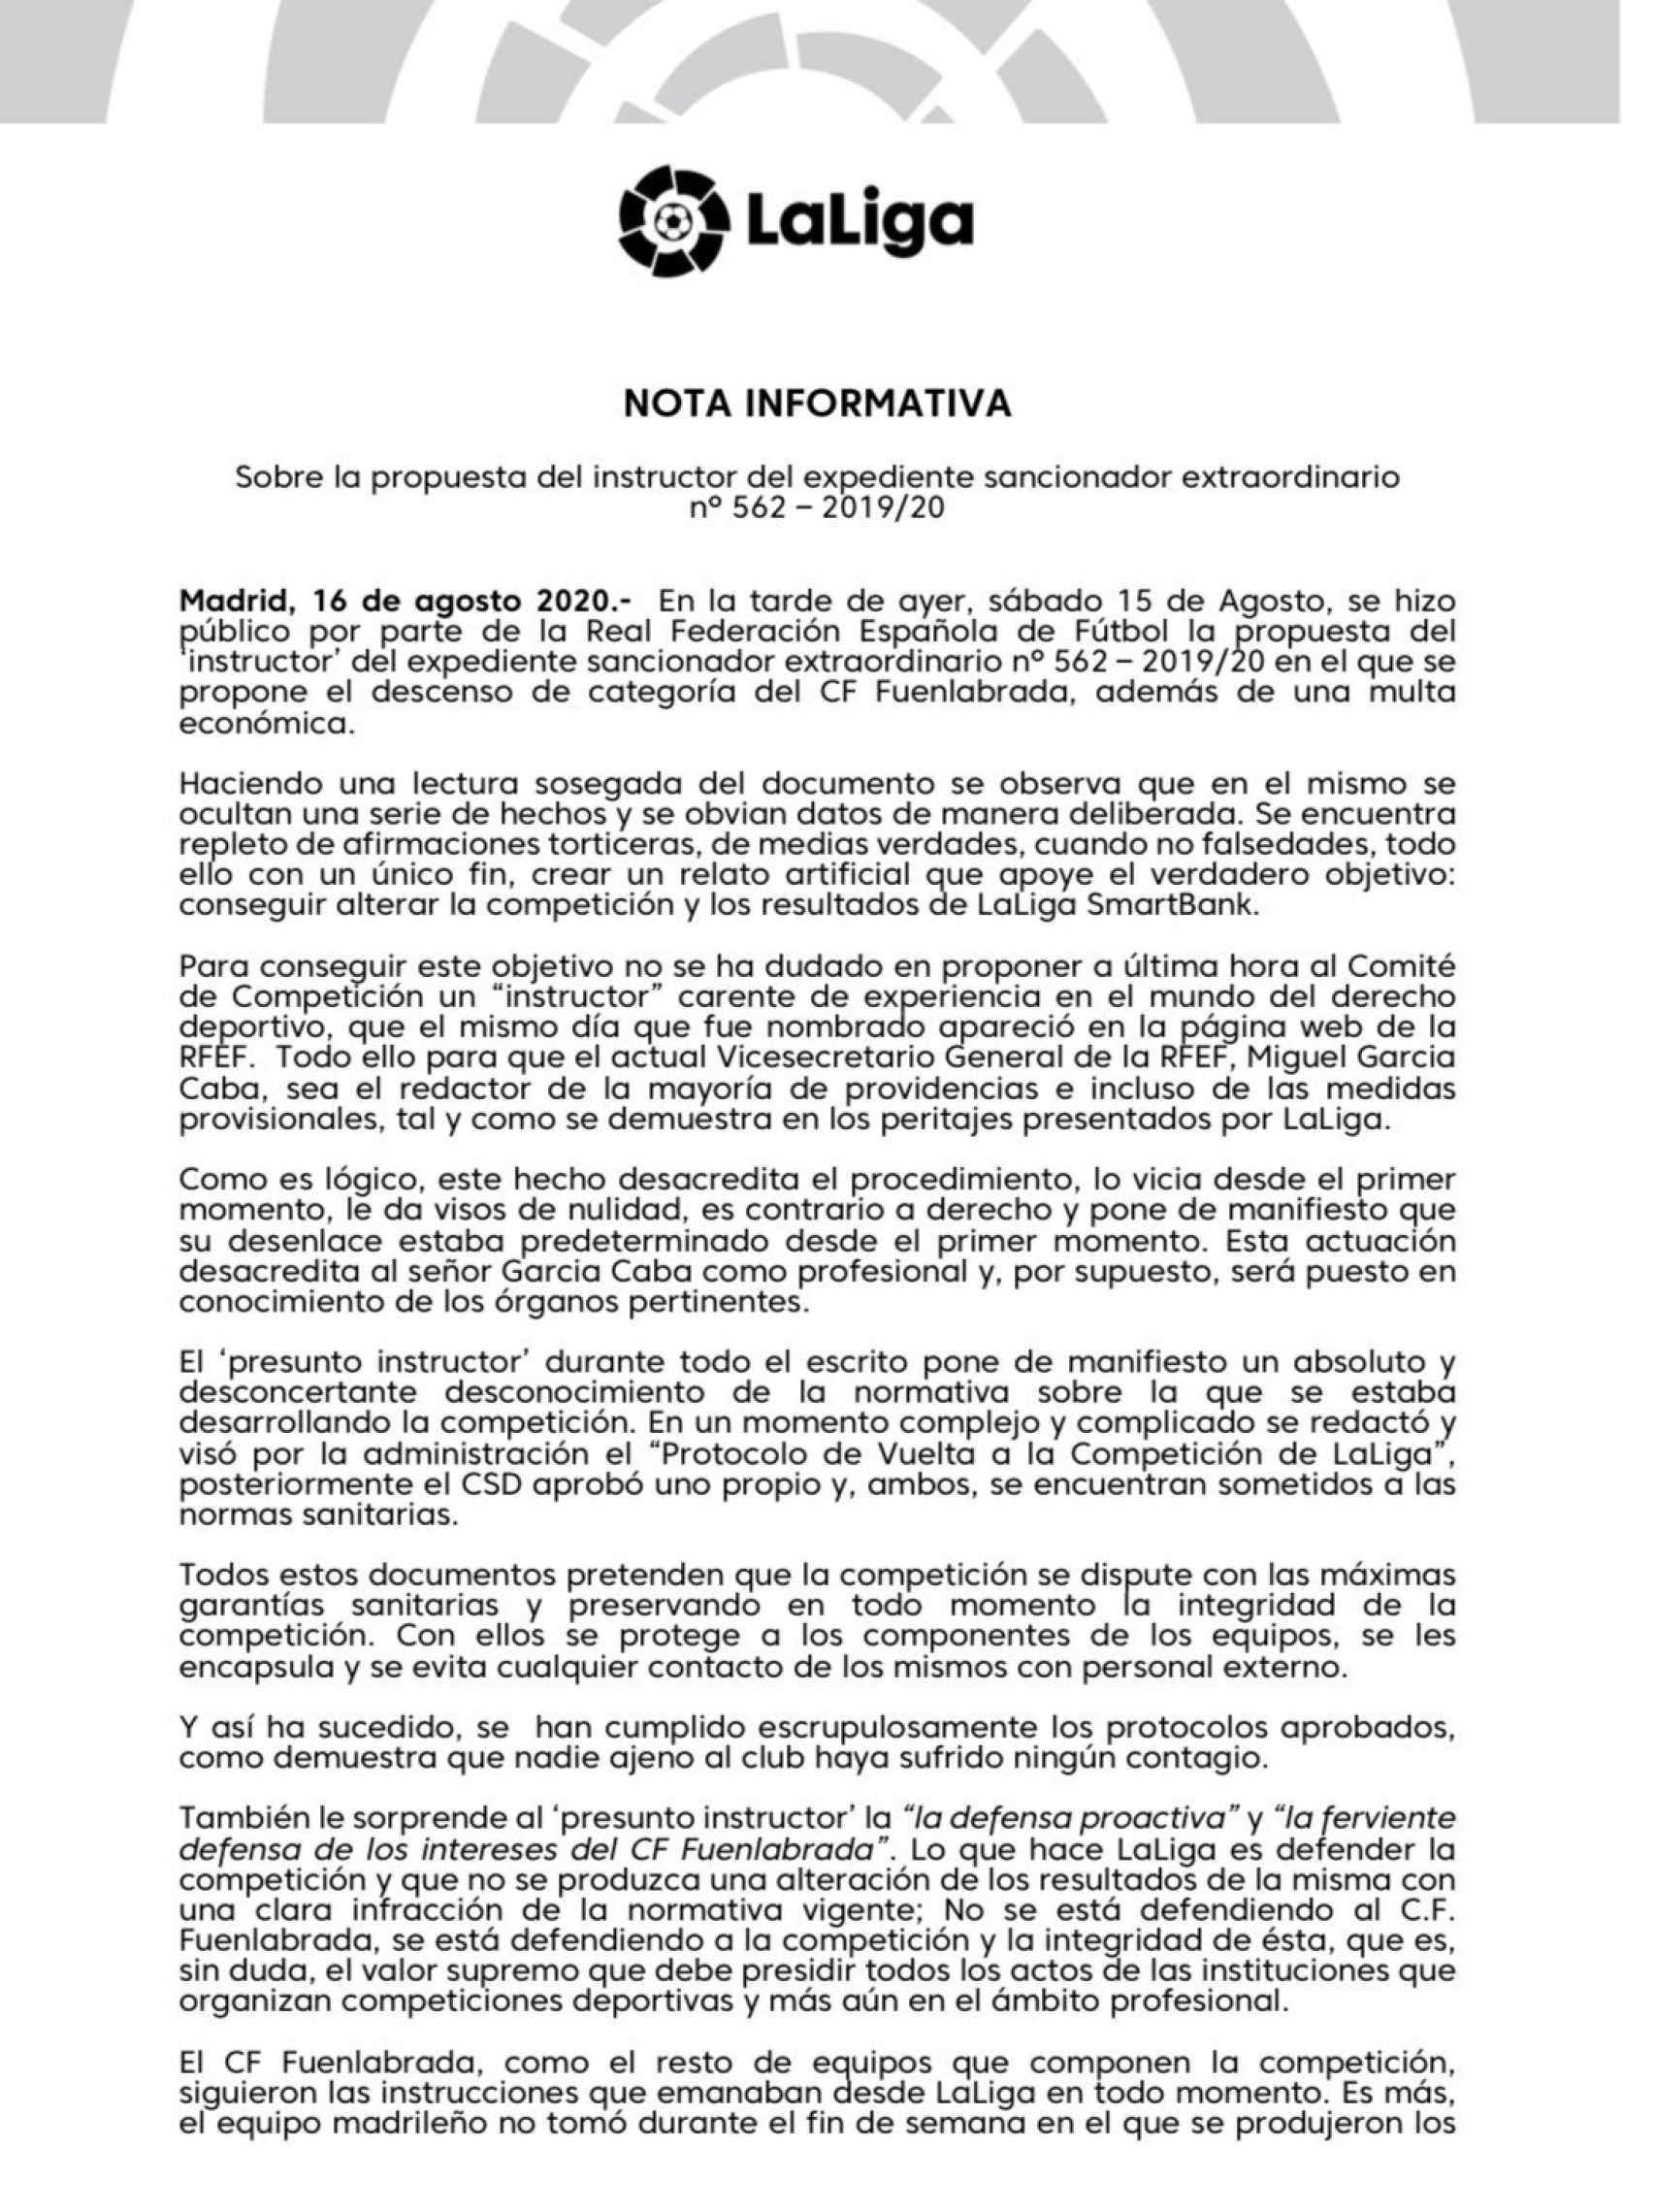 La primera parte del comunicado de LaLiga sobre la propuesta de descenso al Fuenlabrada